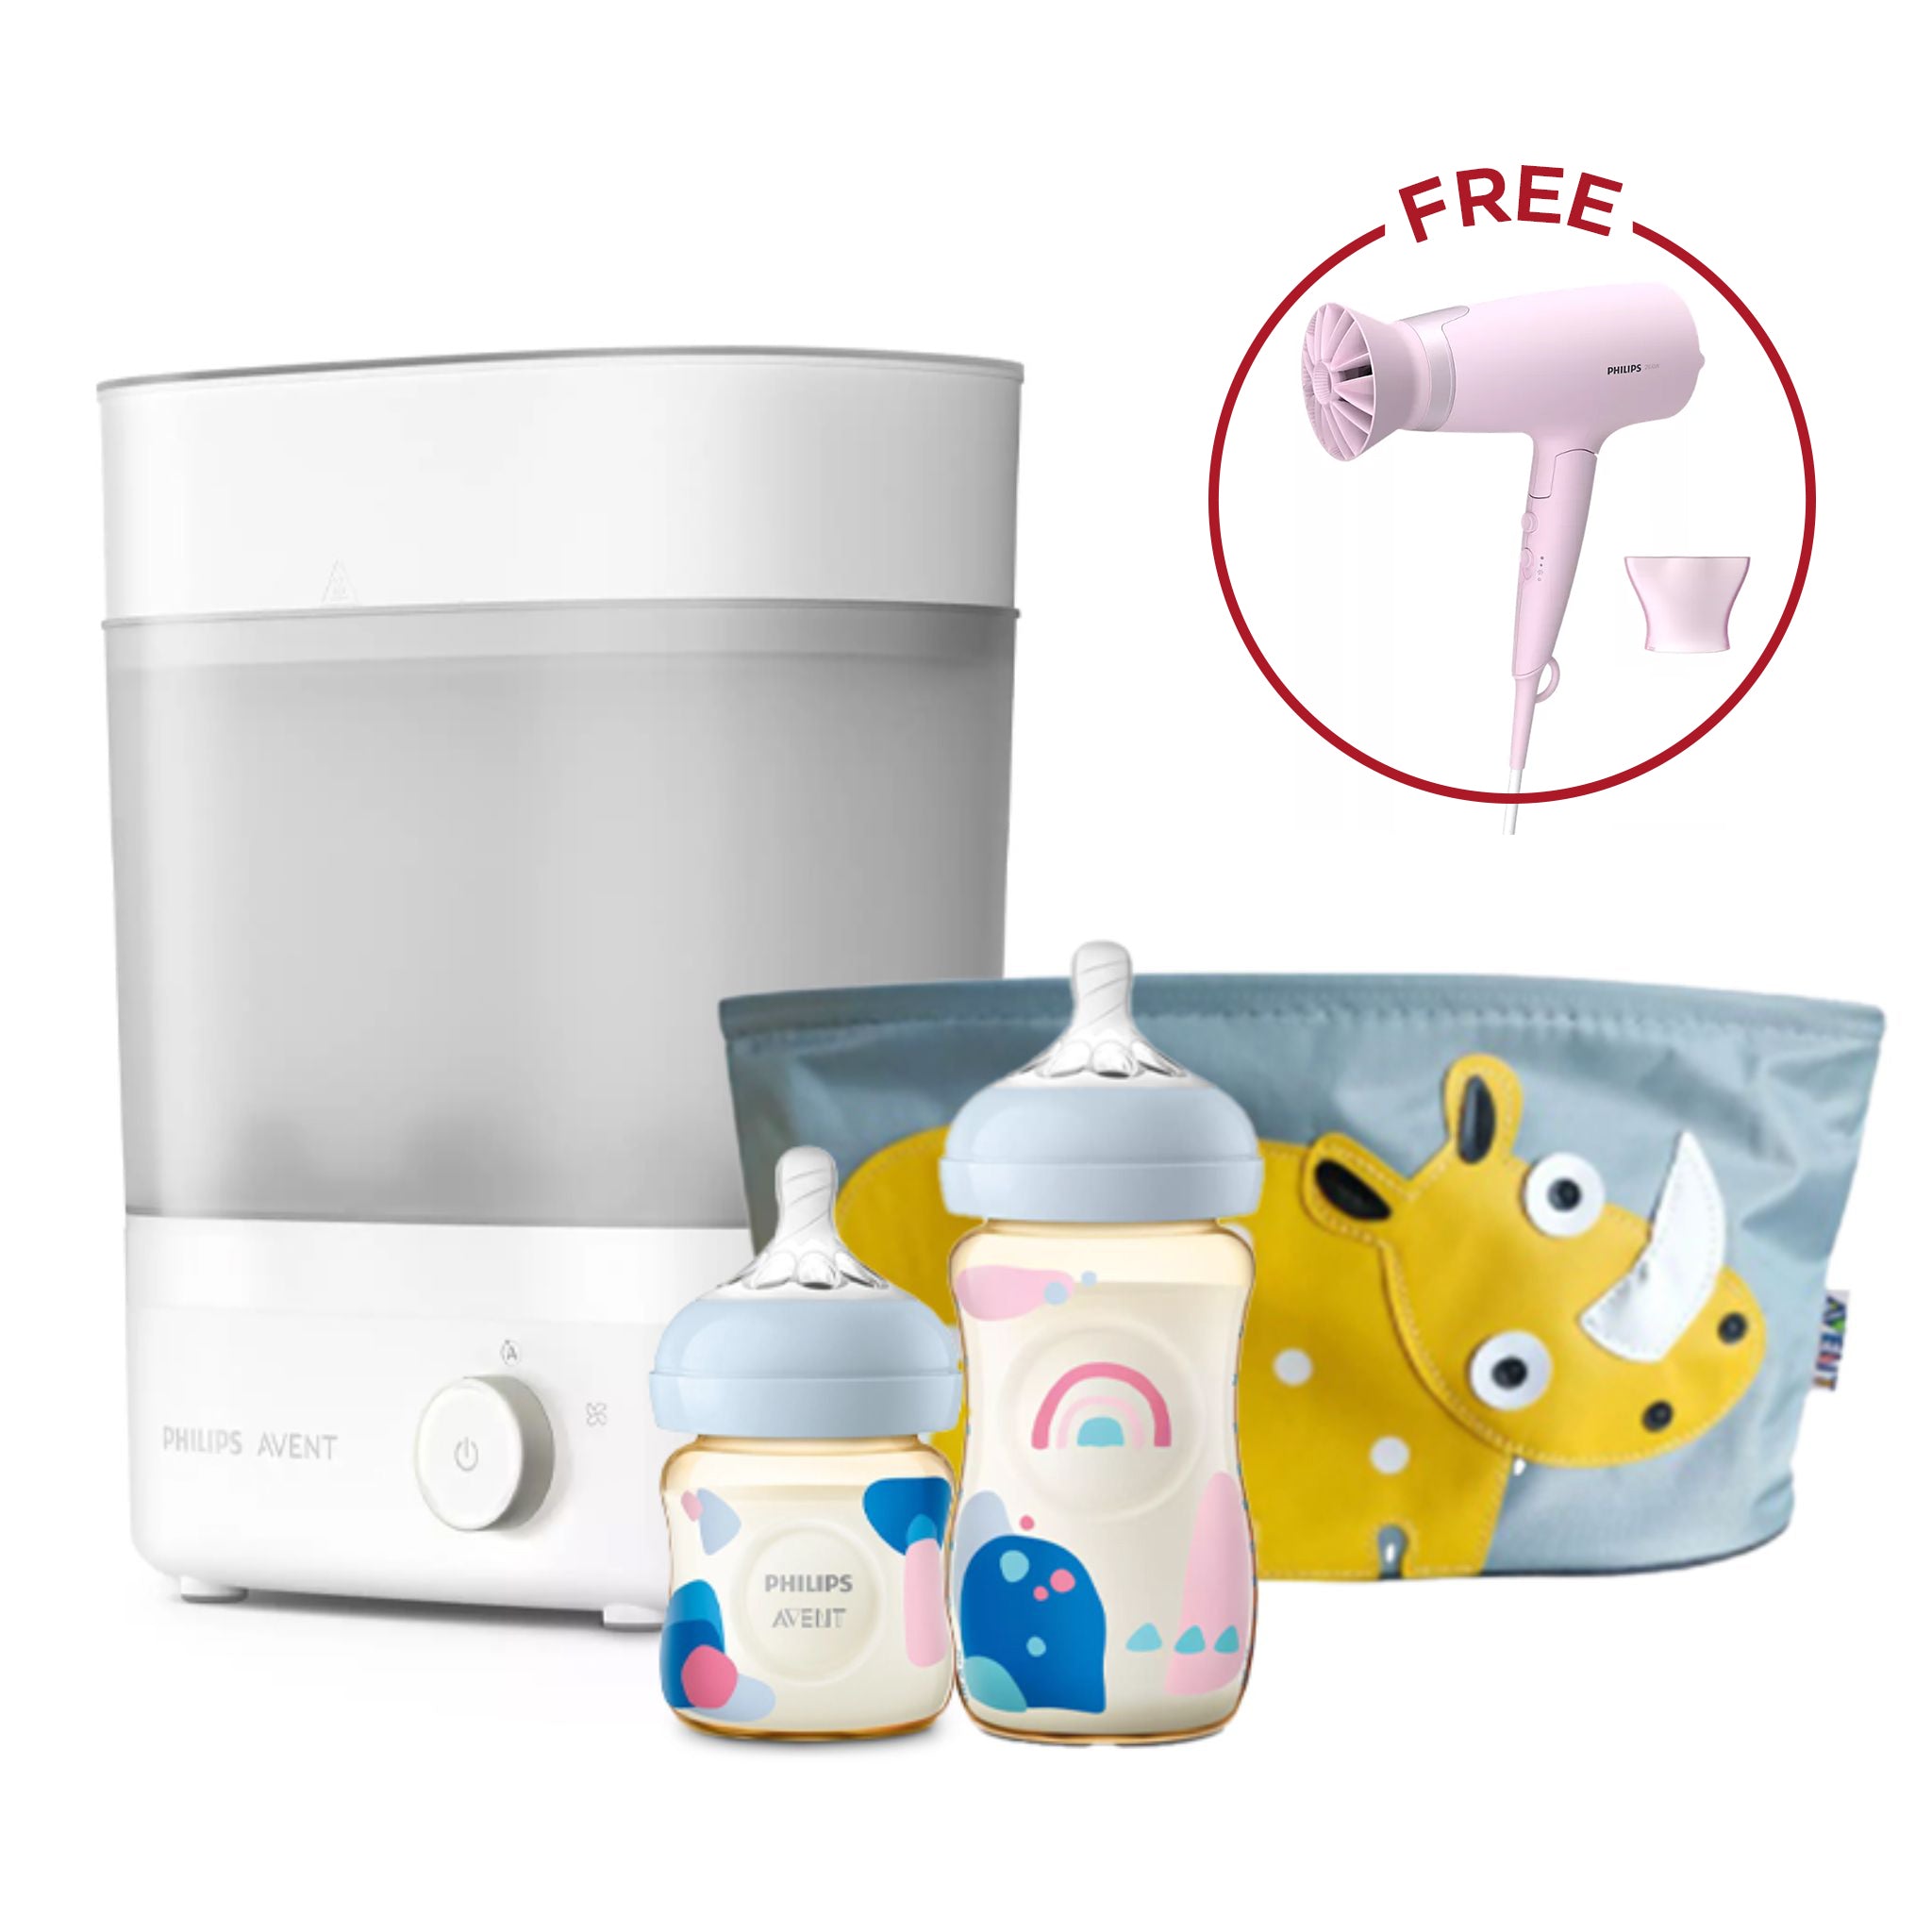 Philips Avent Premium Newborn Set + Free Hair Dryer